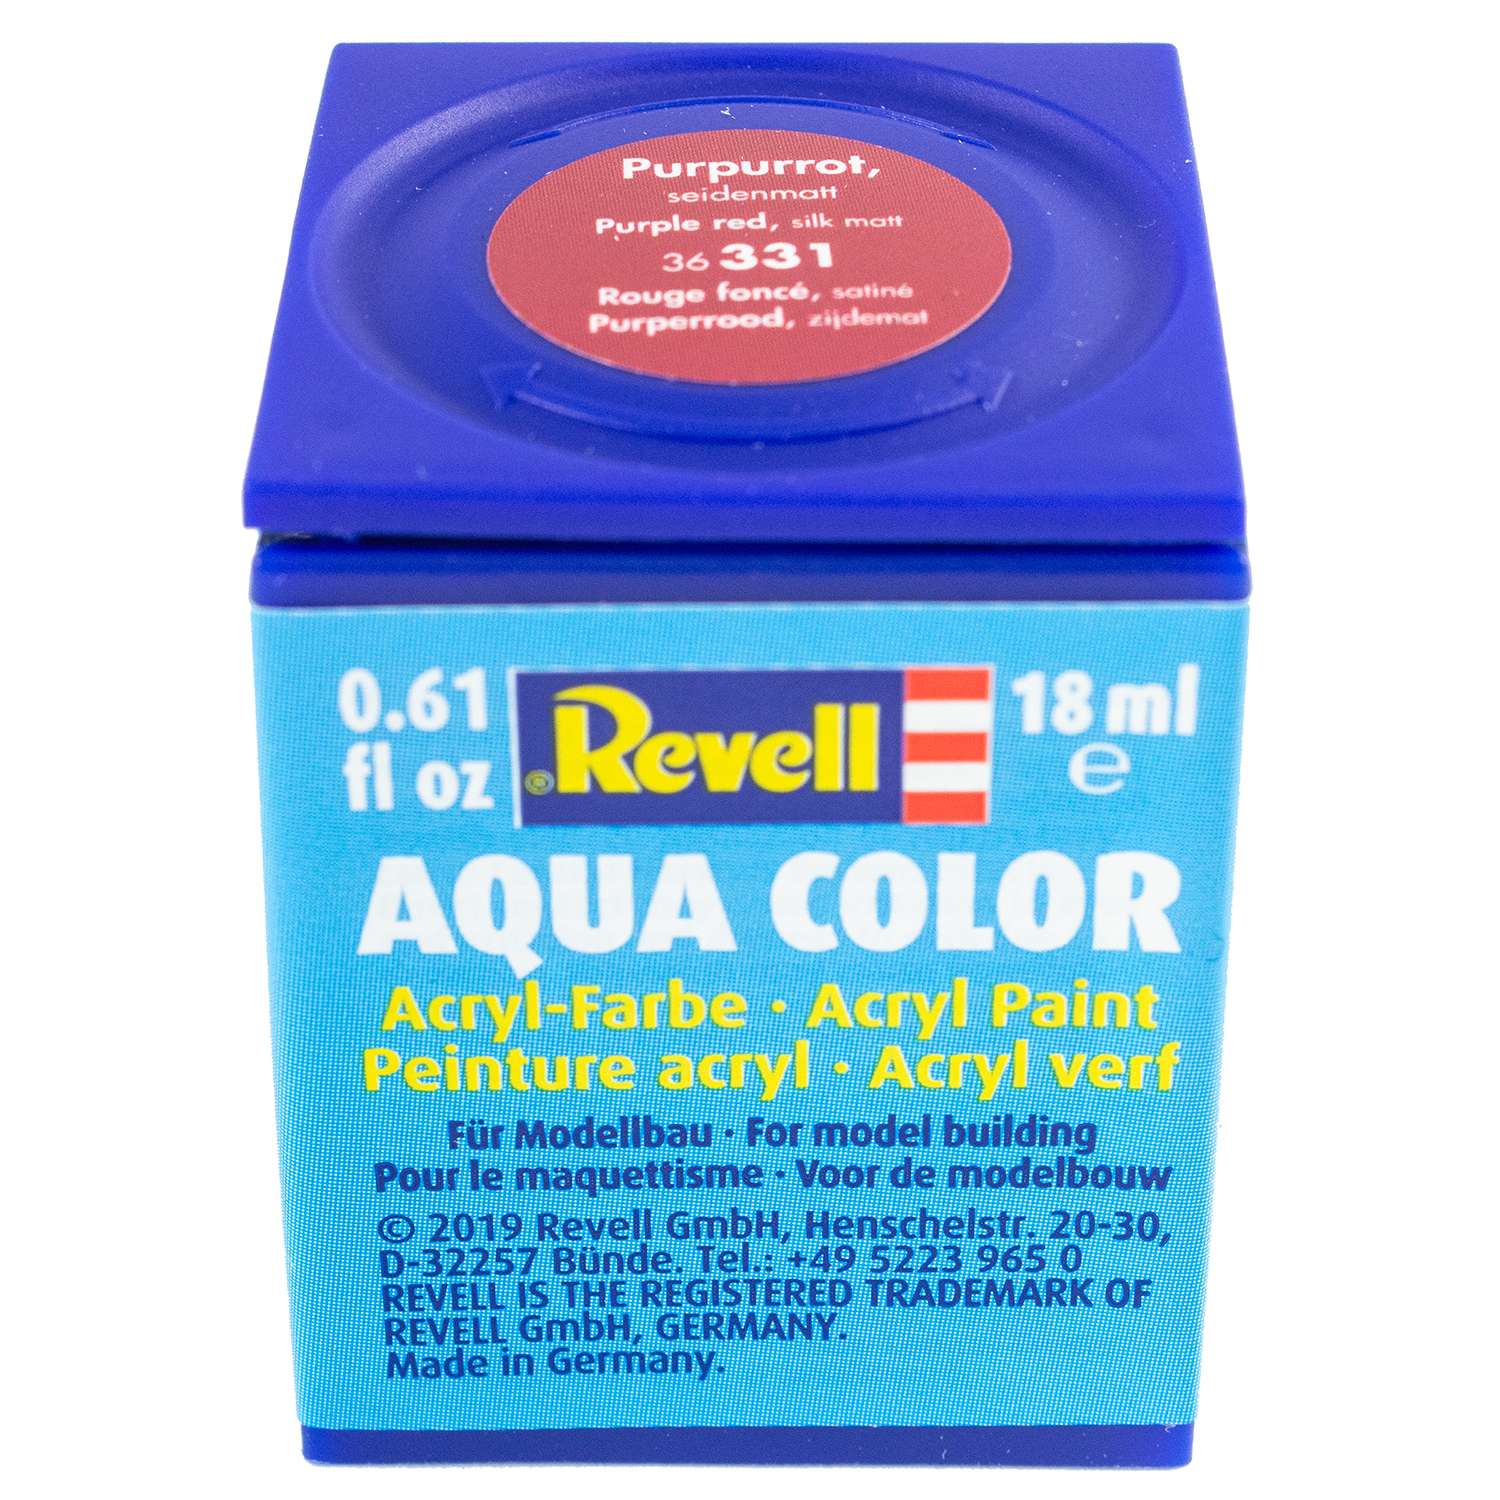 Аква-краска Revell пурпурно-красная шёлк 36331 - фото 1